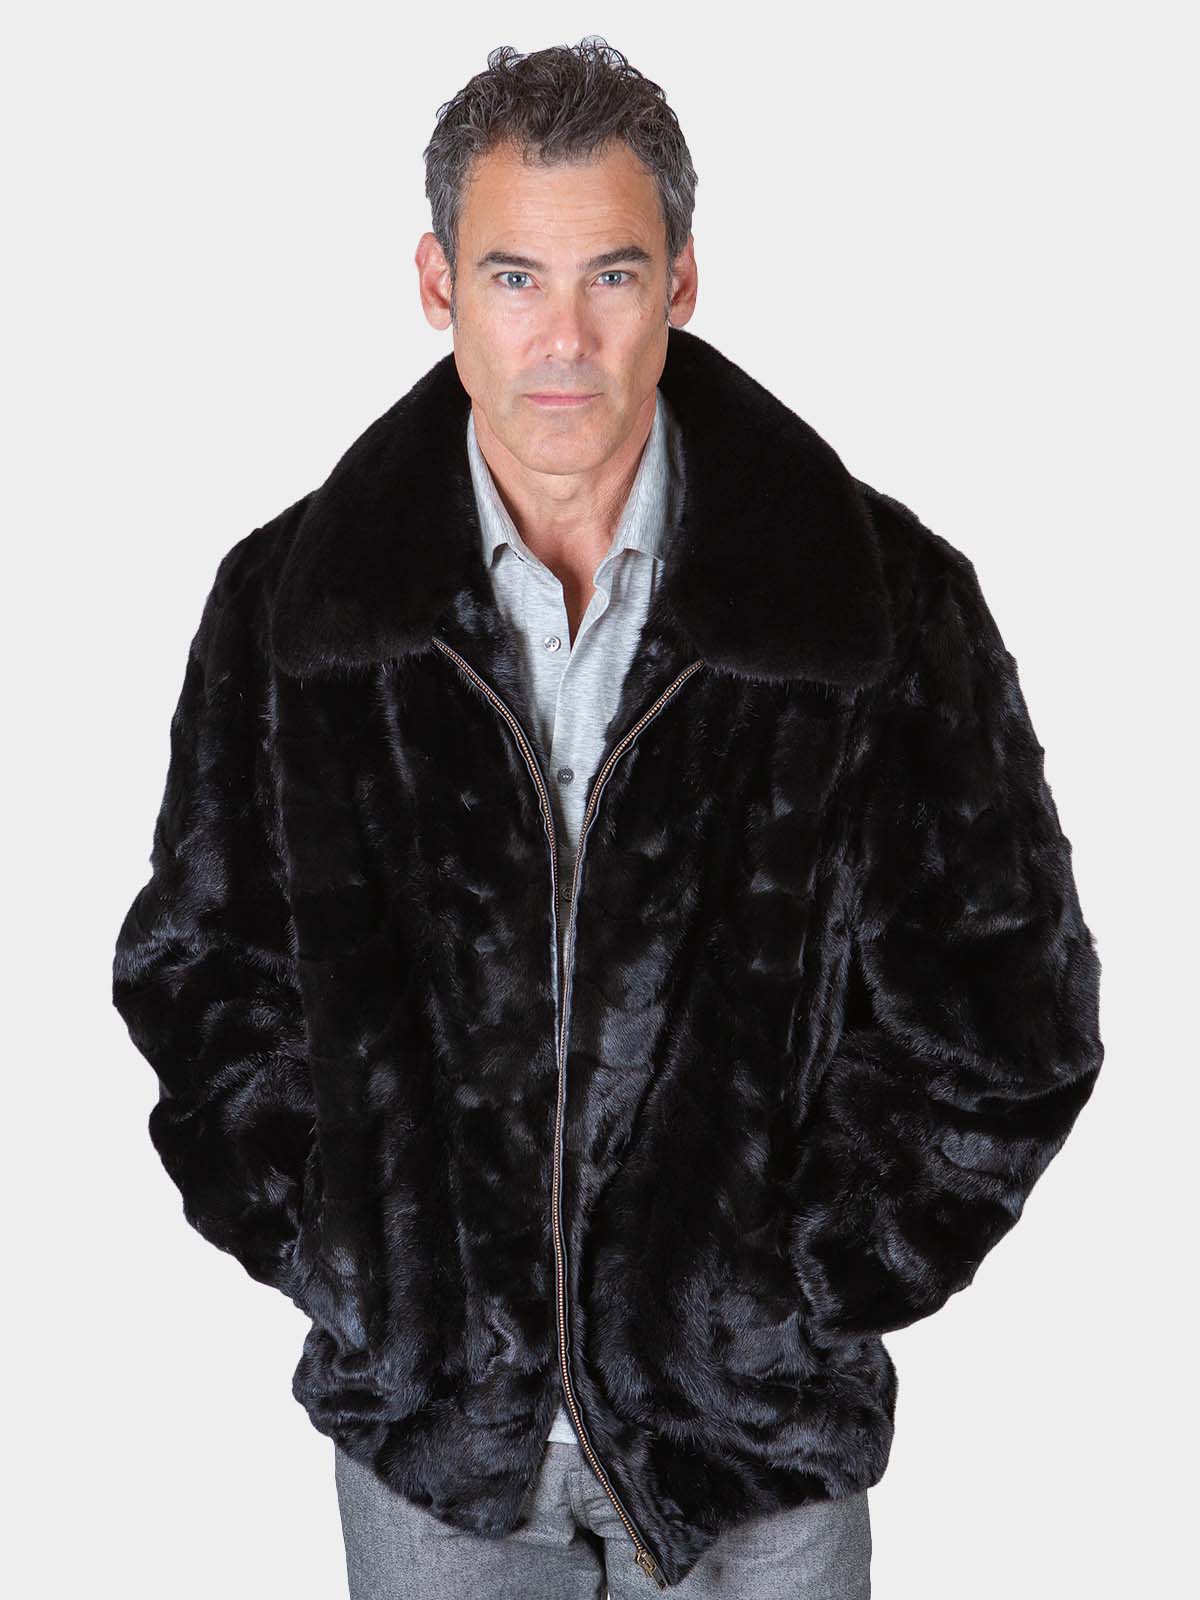 Black Sheared Mink Fur Jacket - Men's Large